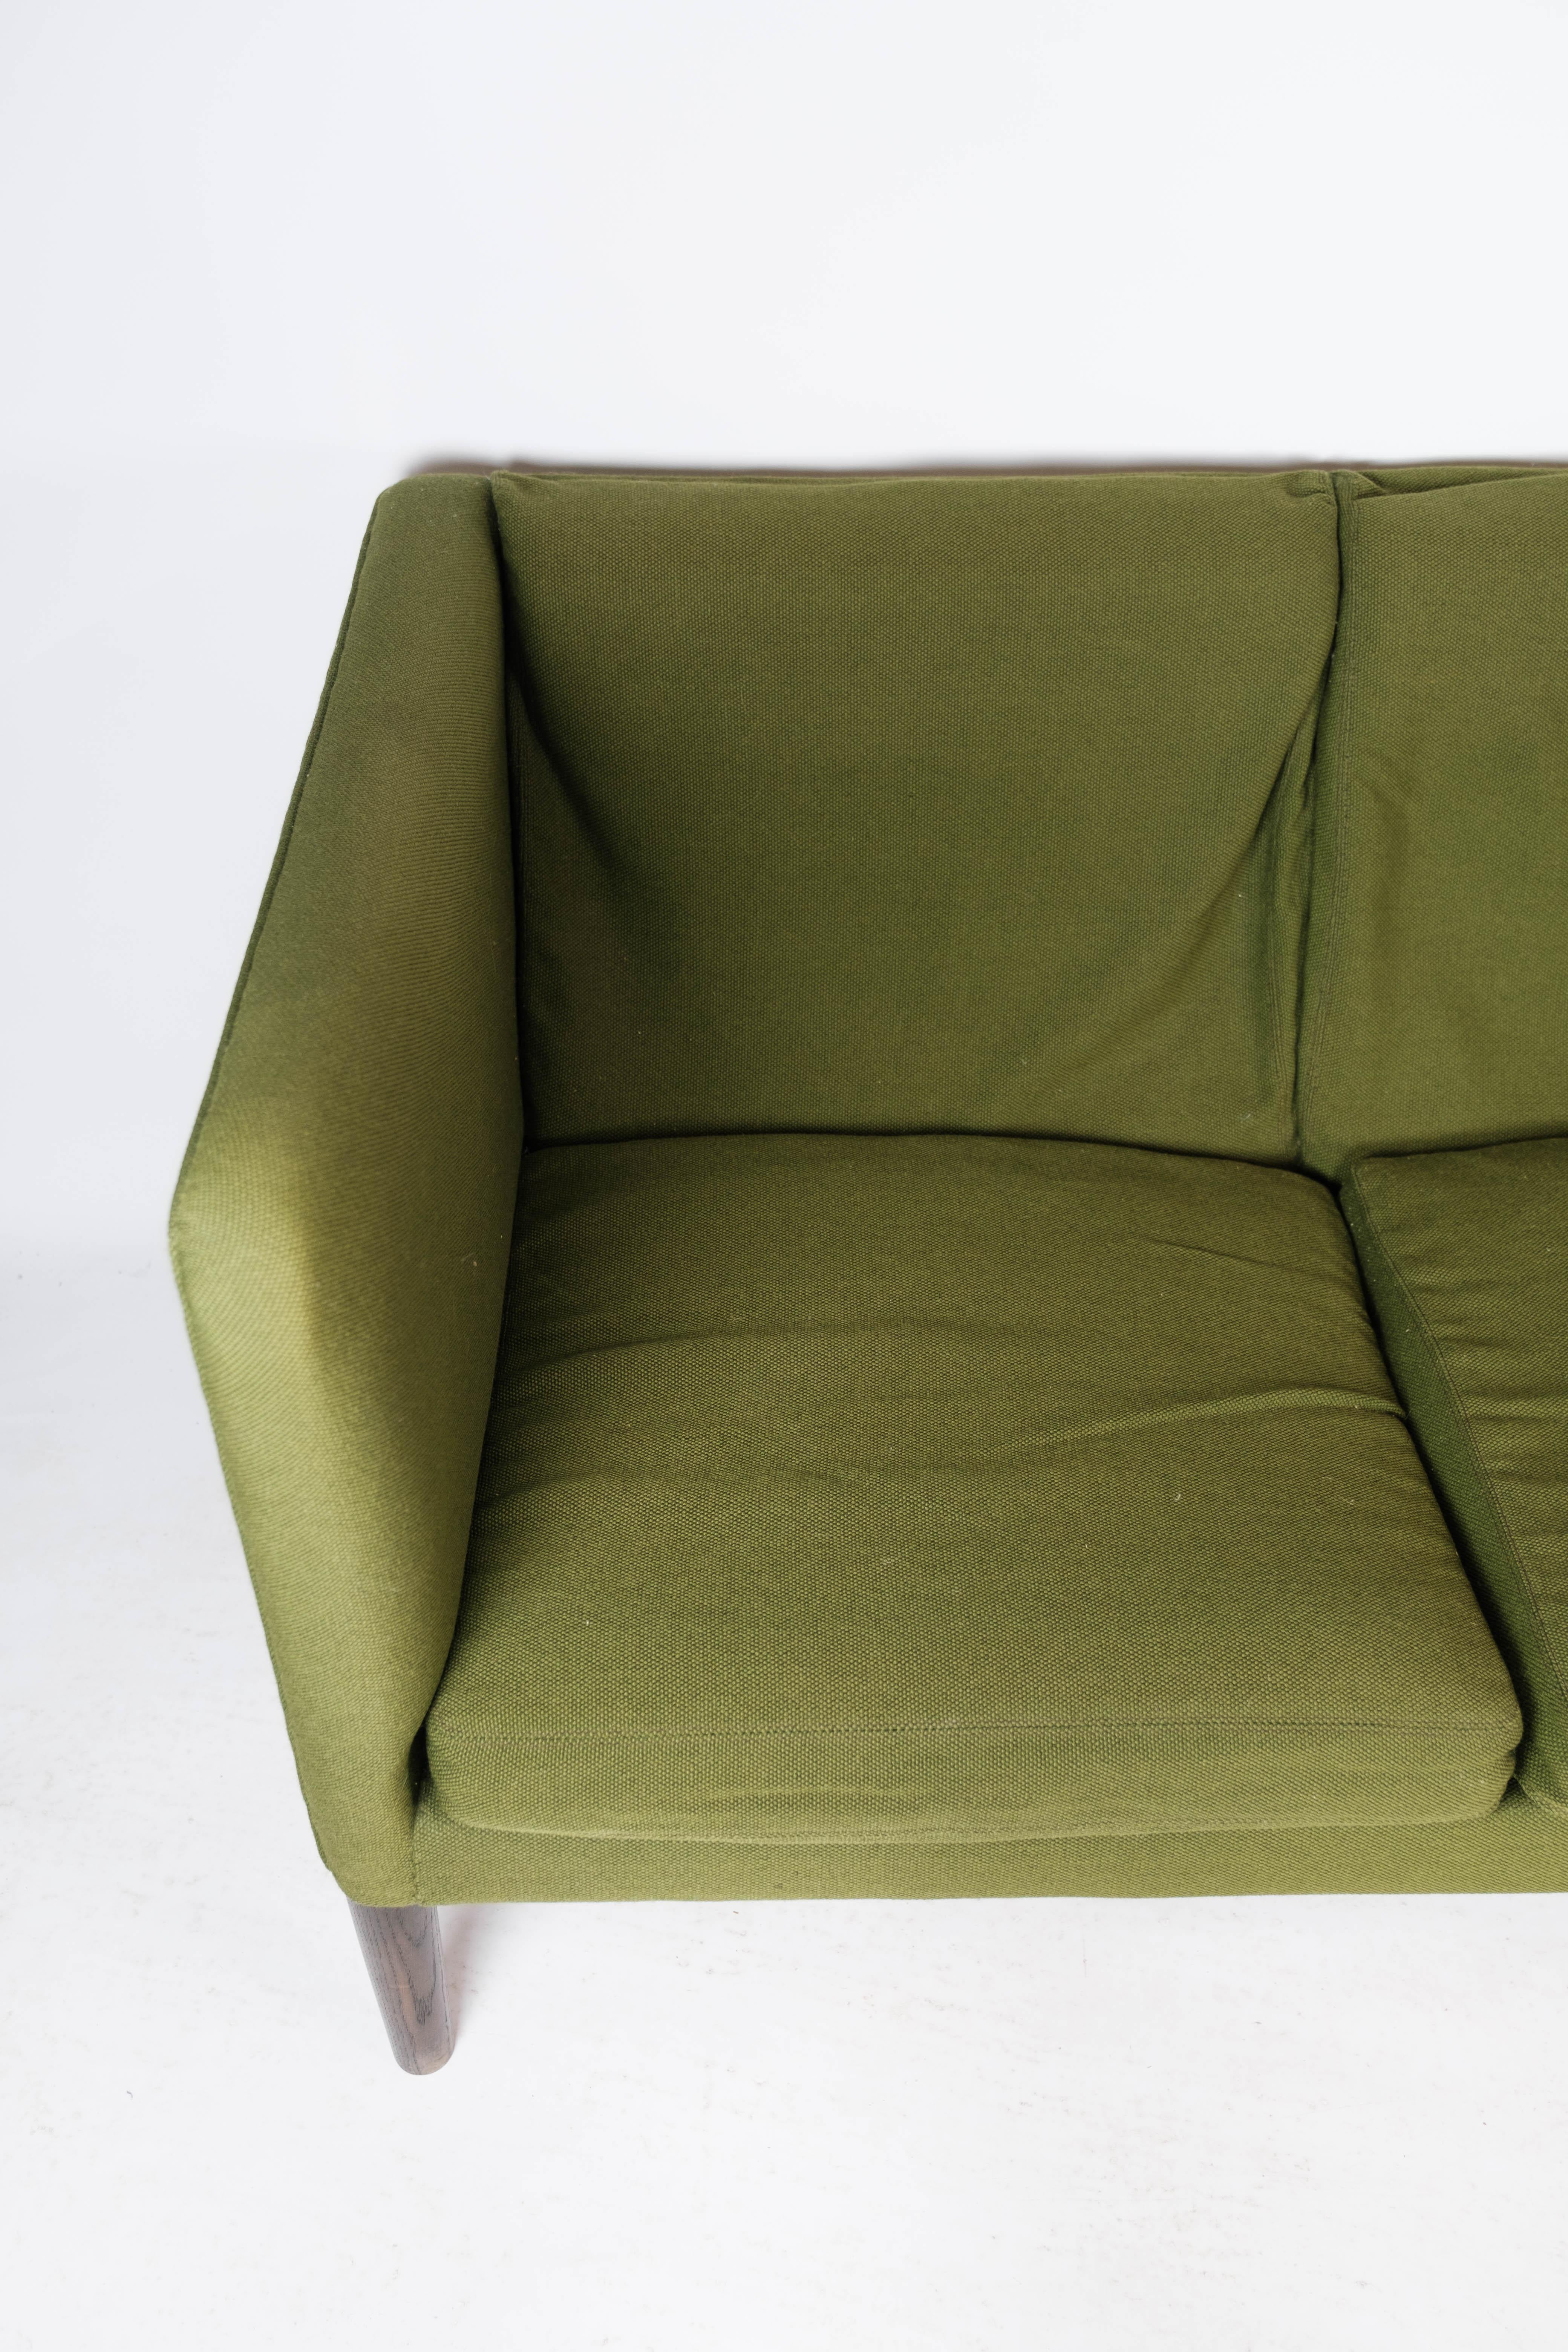 Scandinavian Modern Three Seater Sofa, Model AP 18S, Designed by Hans J. Wegner, 1960s For Sale